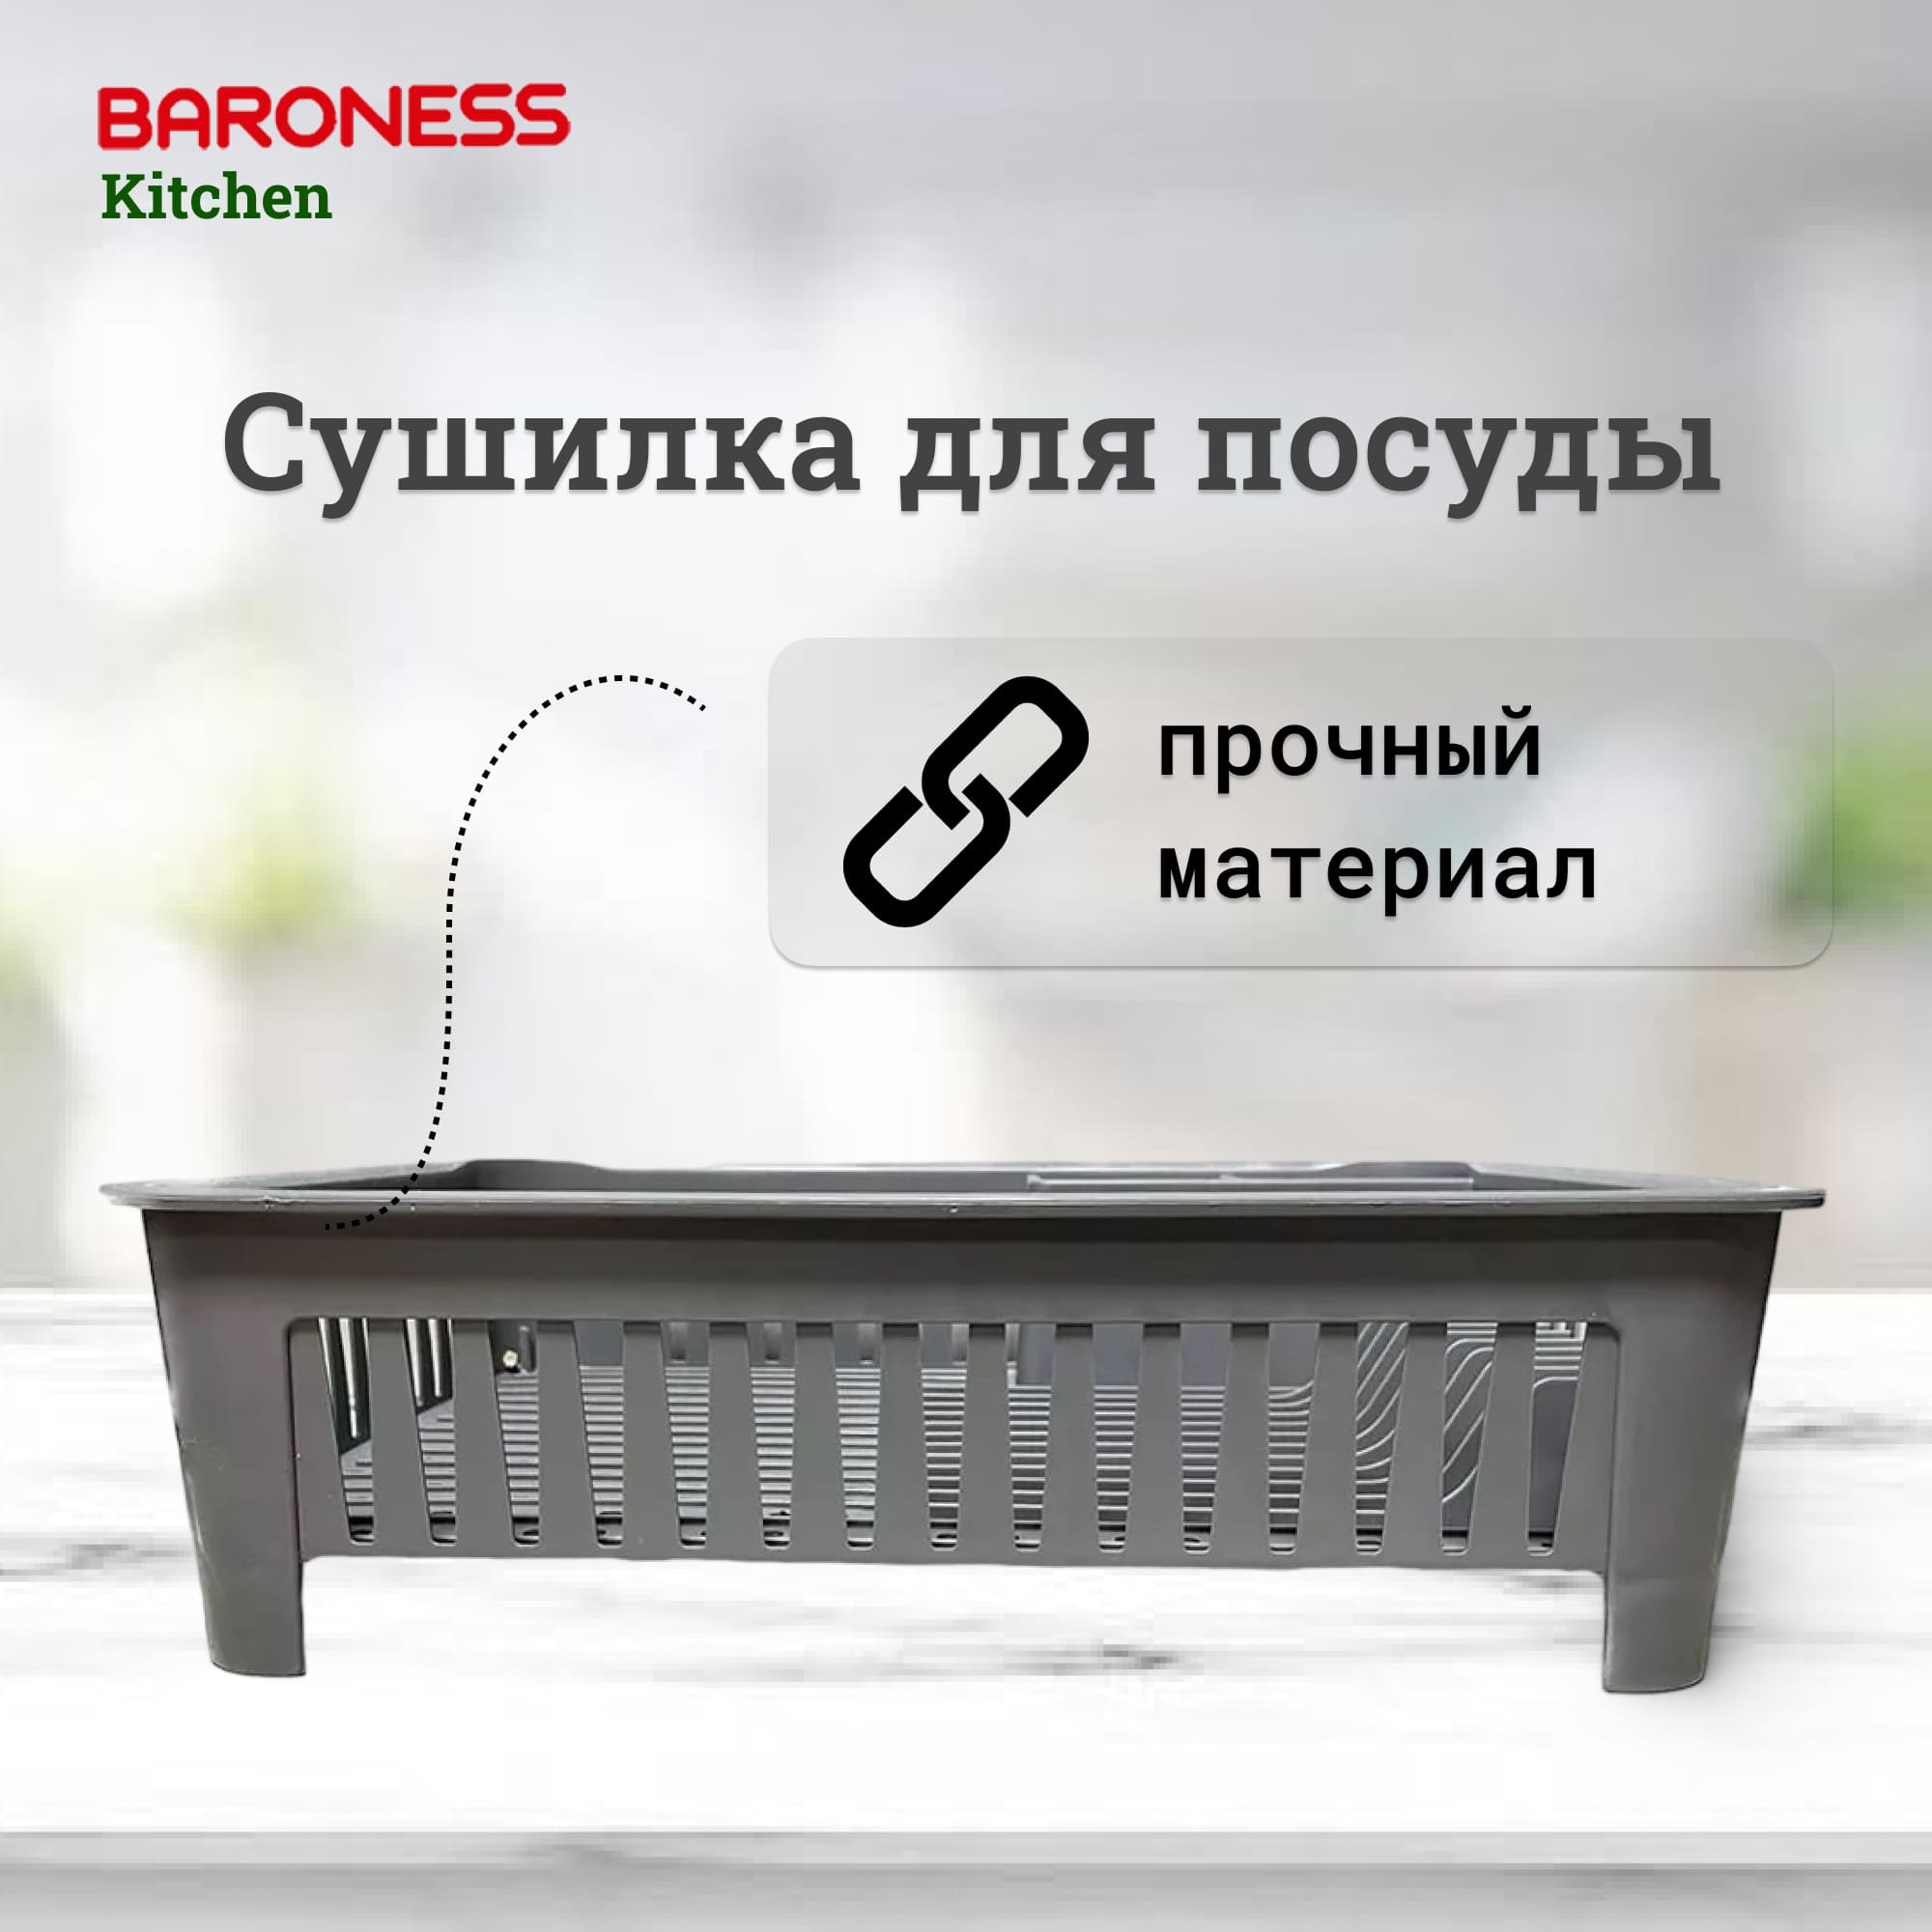 Сушилка для посуды Baroness Home 42x33 см в ассортименте универсальная складная сушилка для посуды